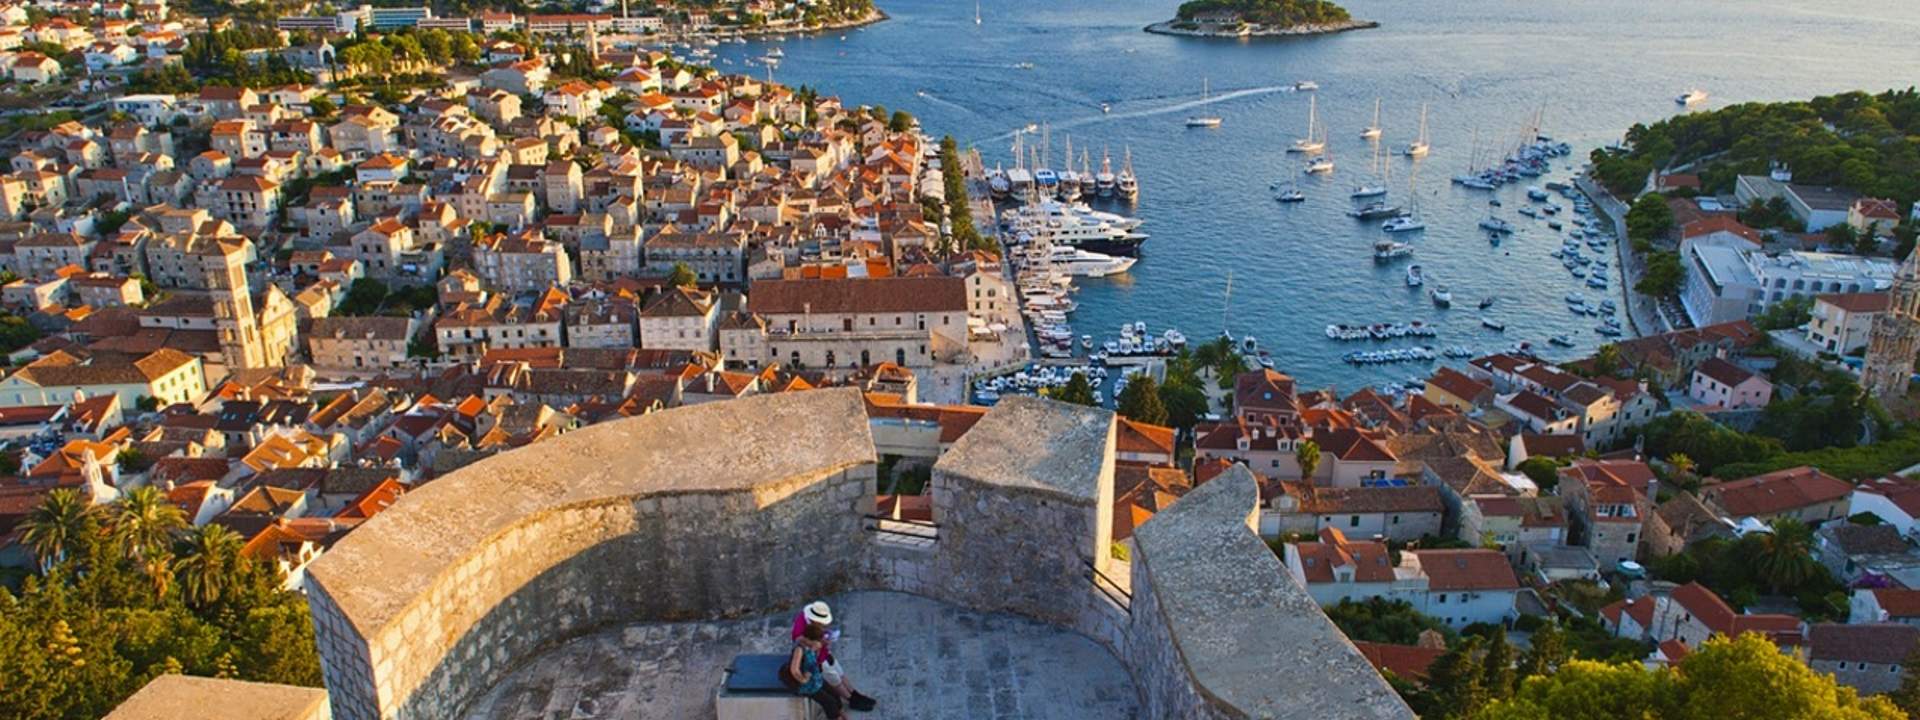 Descubrid La Historia De Croacia En Un Catamarán